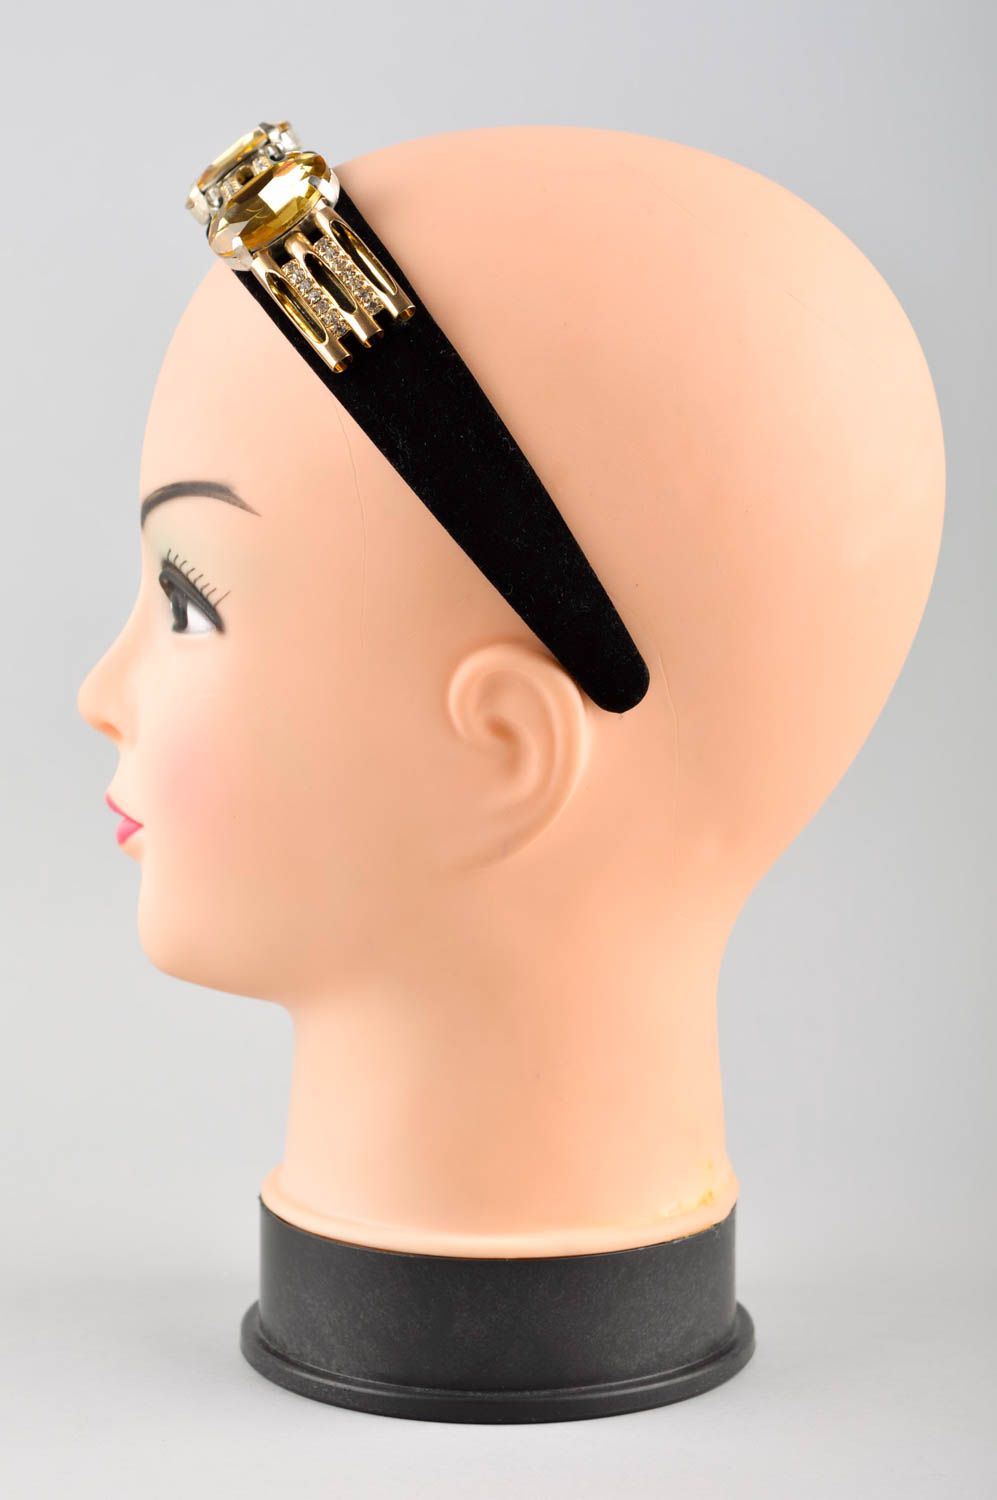 Аксессуар для волос хэнд мэйд обруч на голову с хрусталем женский аксессуар фото 2